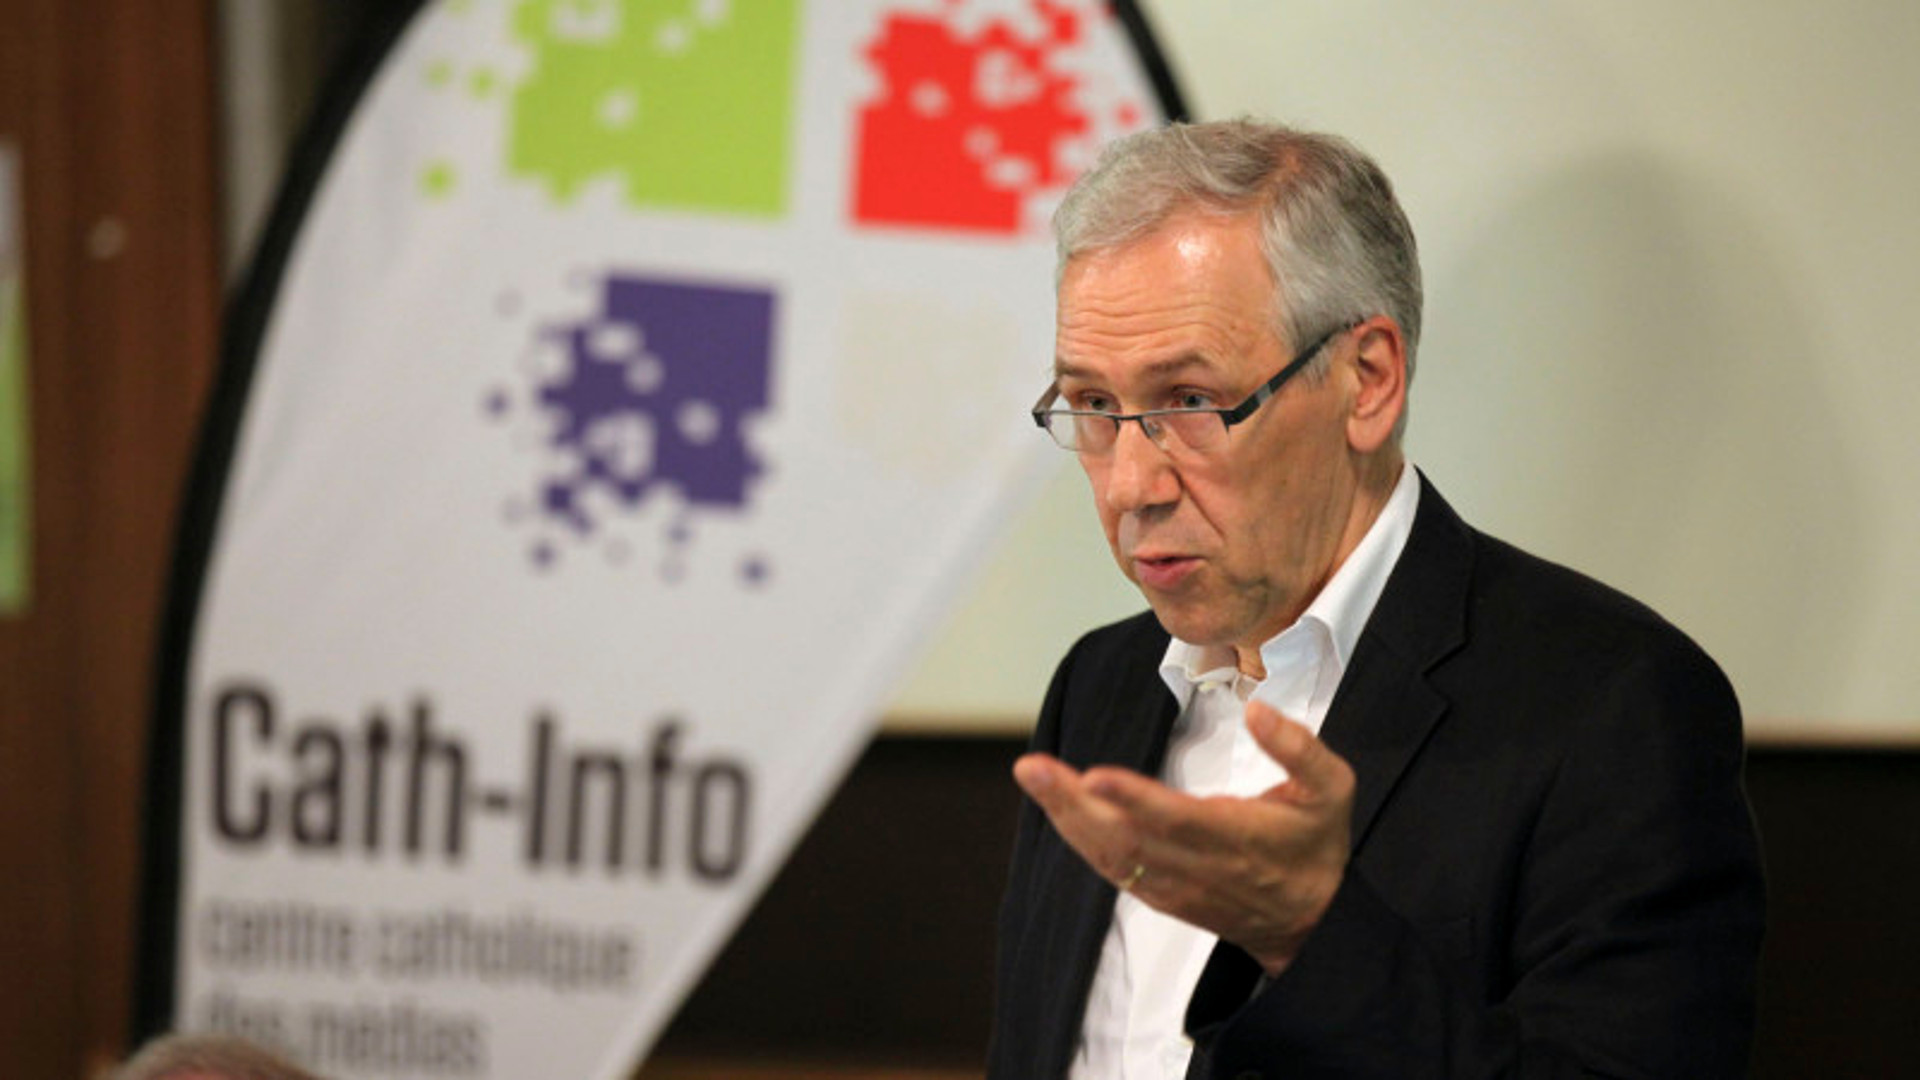 Bernard Litzler, Direktor von Cath-Info, an der Generalversammlung 2015 in Lausanne